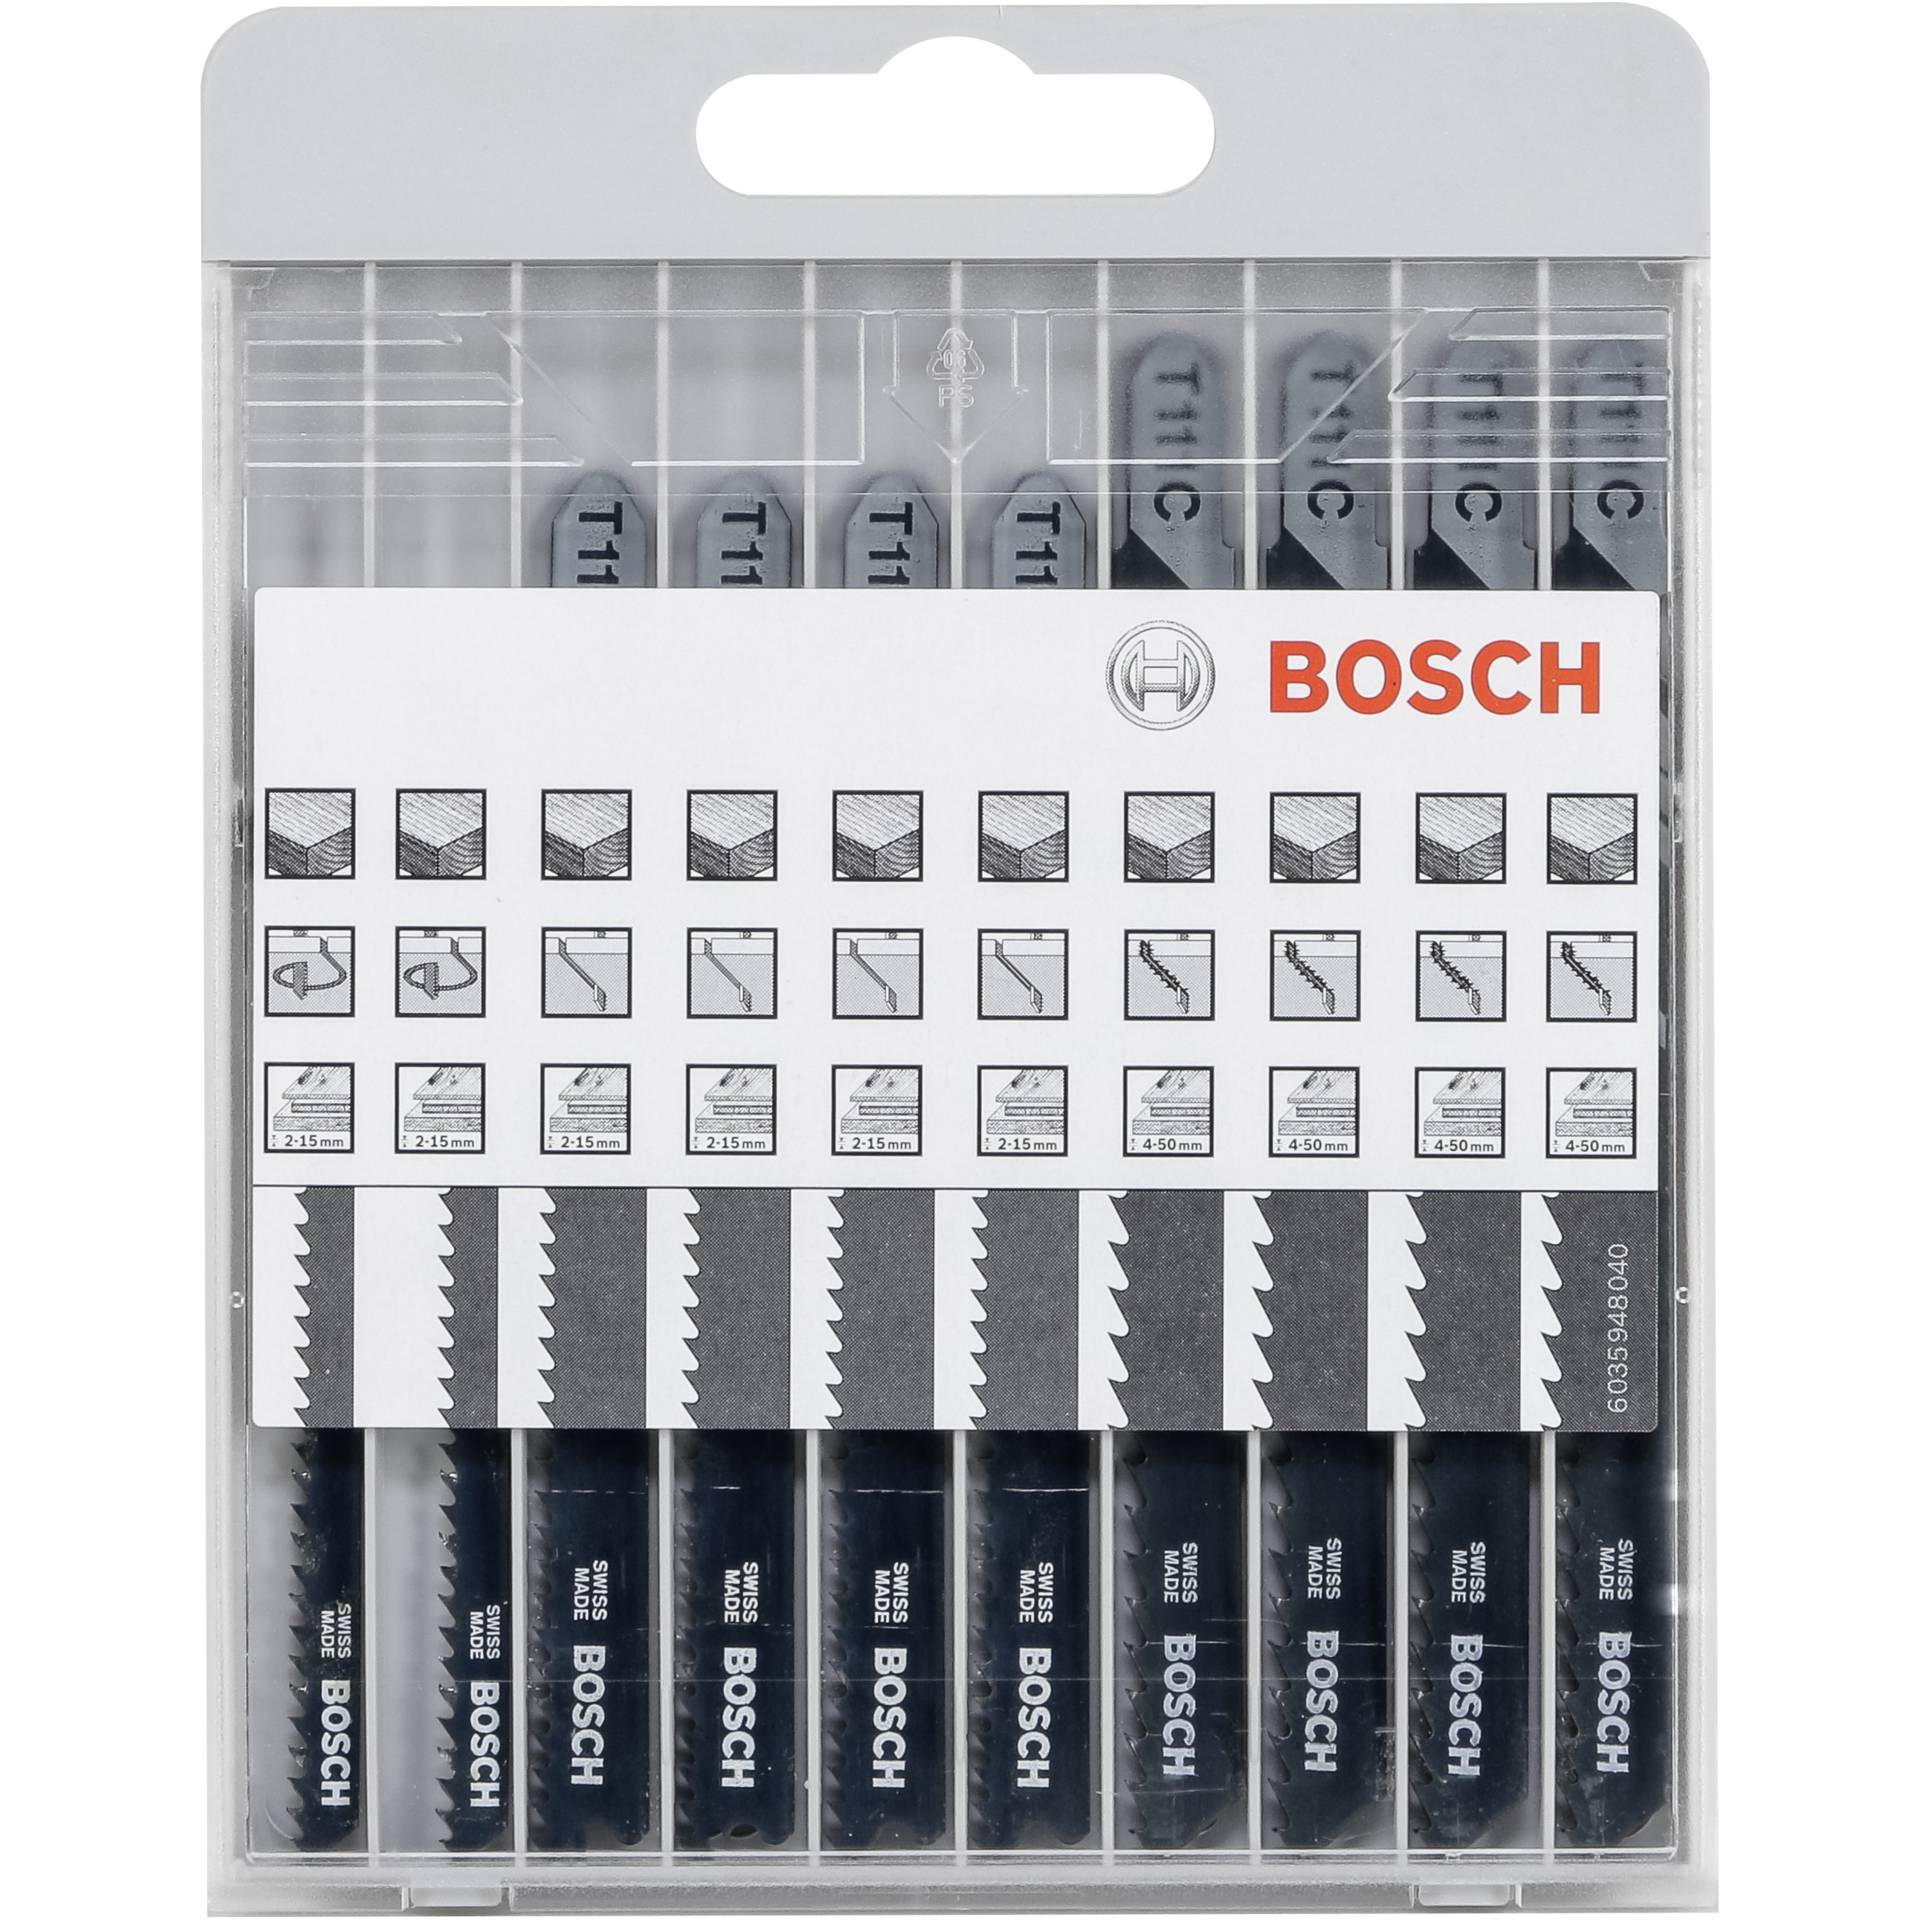 Bosch 10tlg. Stichsägeblatt-Set Basic für Holz